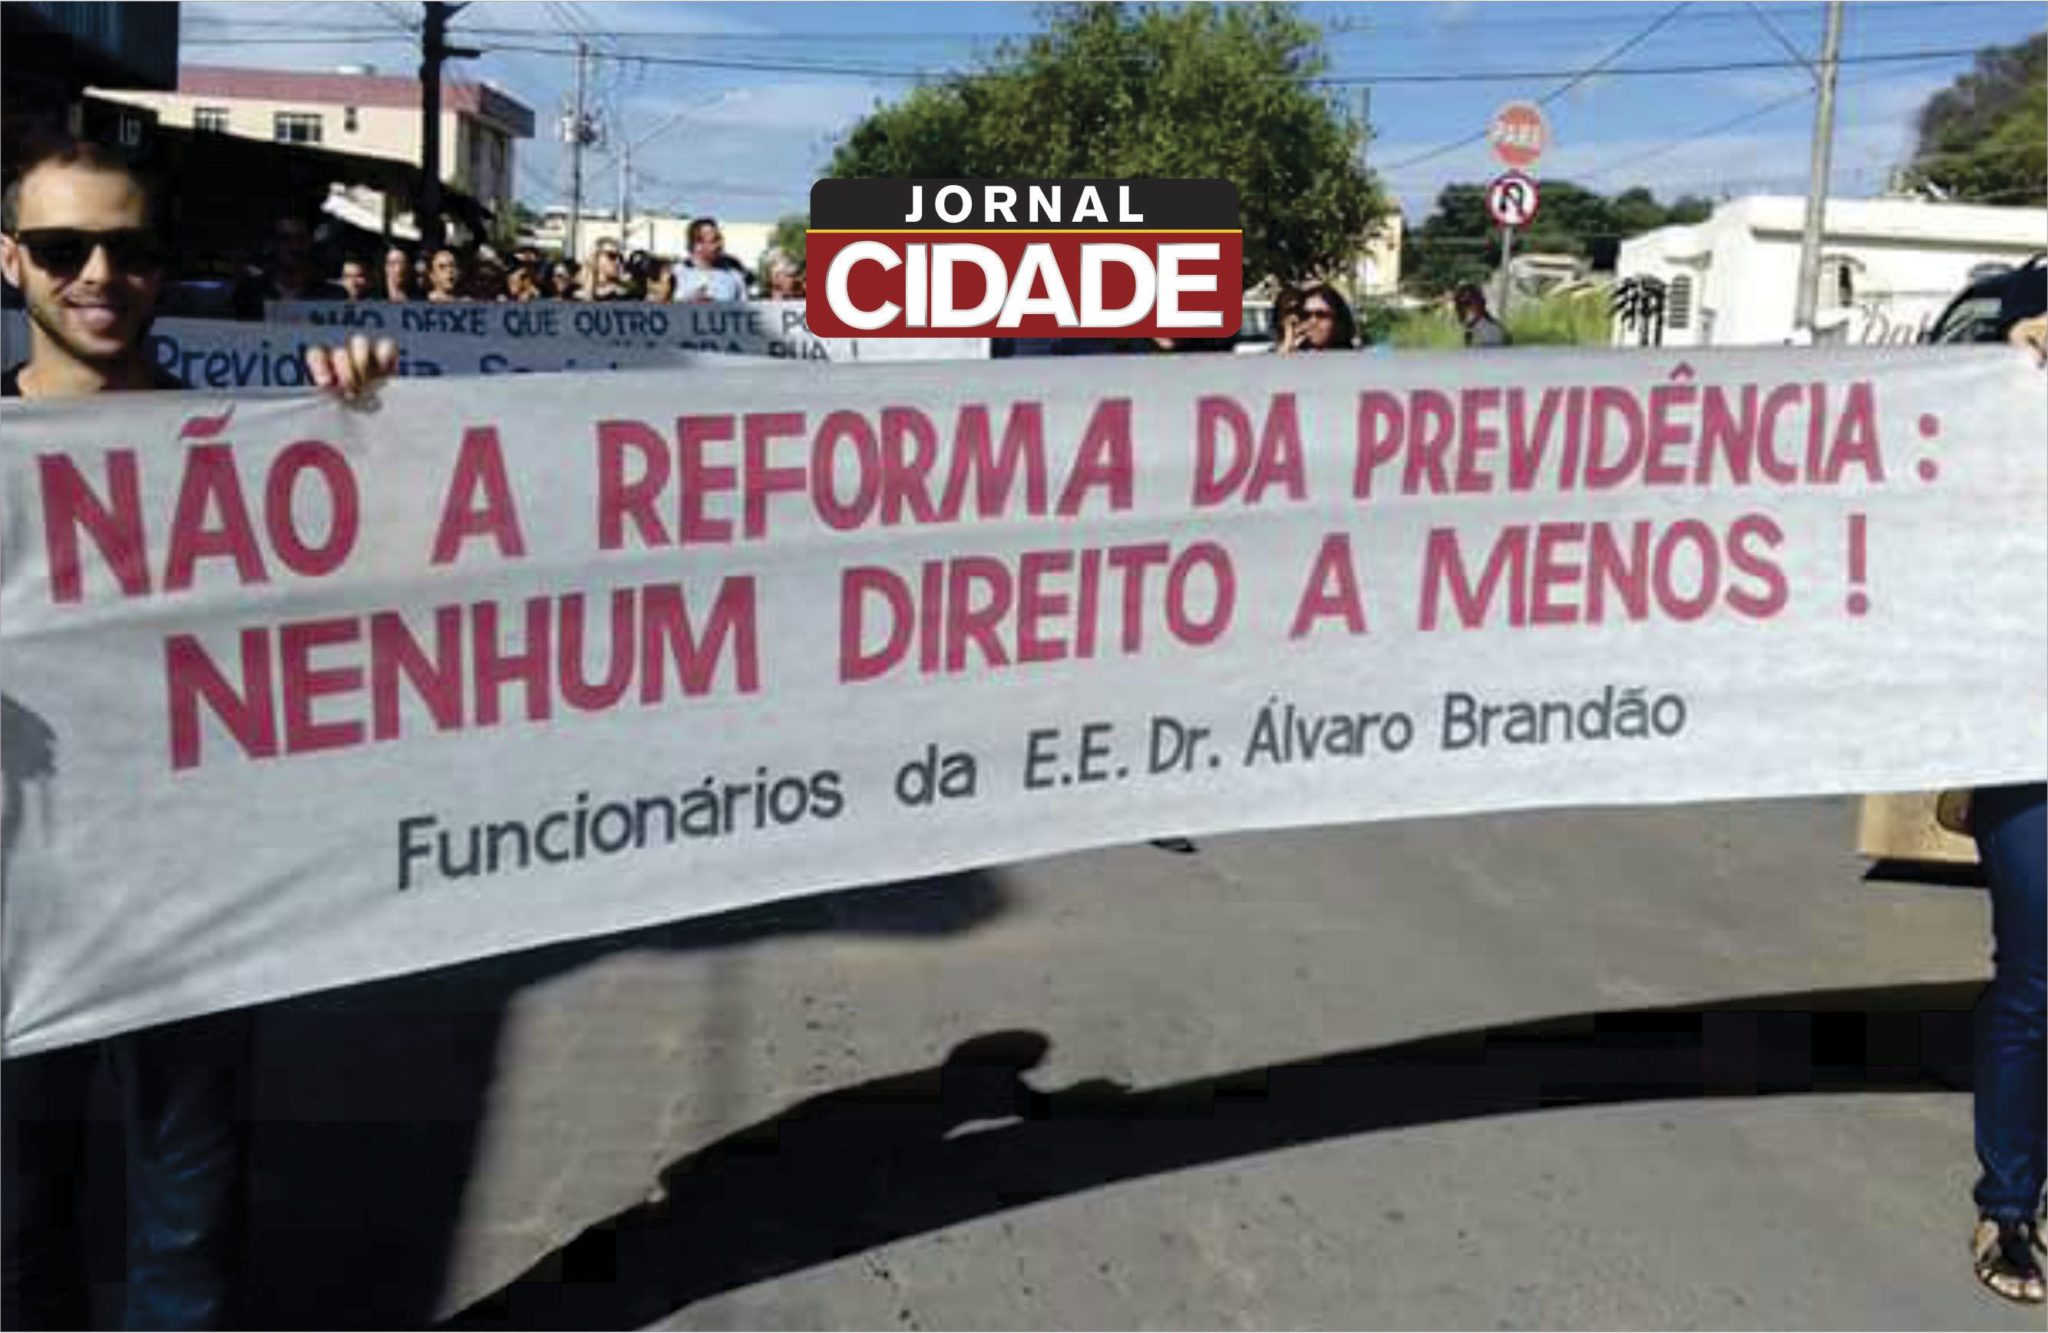 Escolas Estaduais de Lagoa da Prata e região paralisam atividades em protesto à reforma da previdência - Jornal Cidade (Blogue)